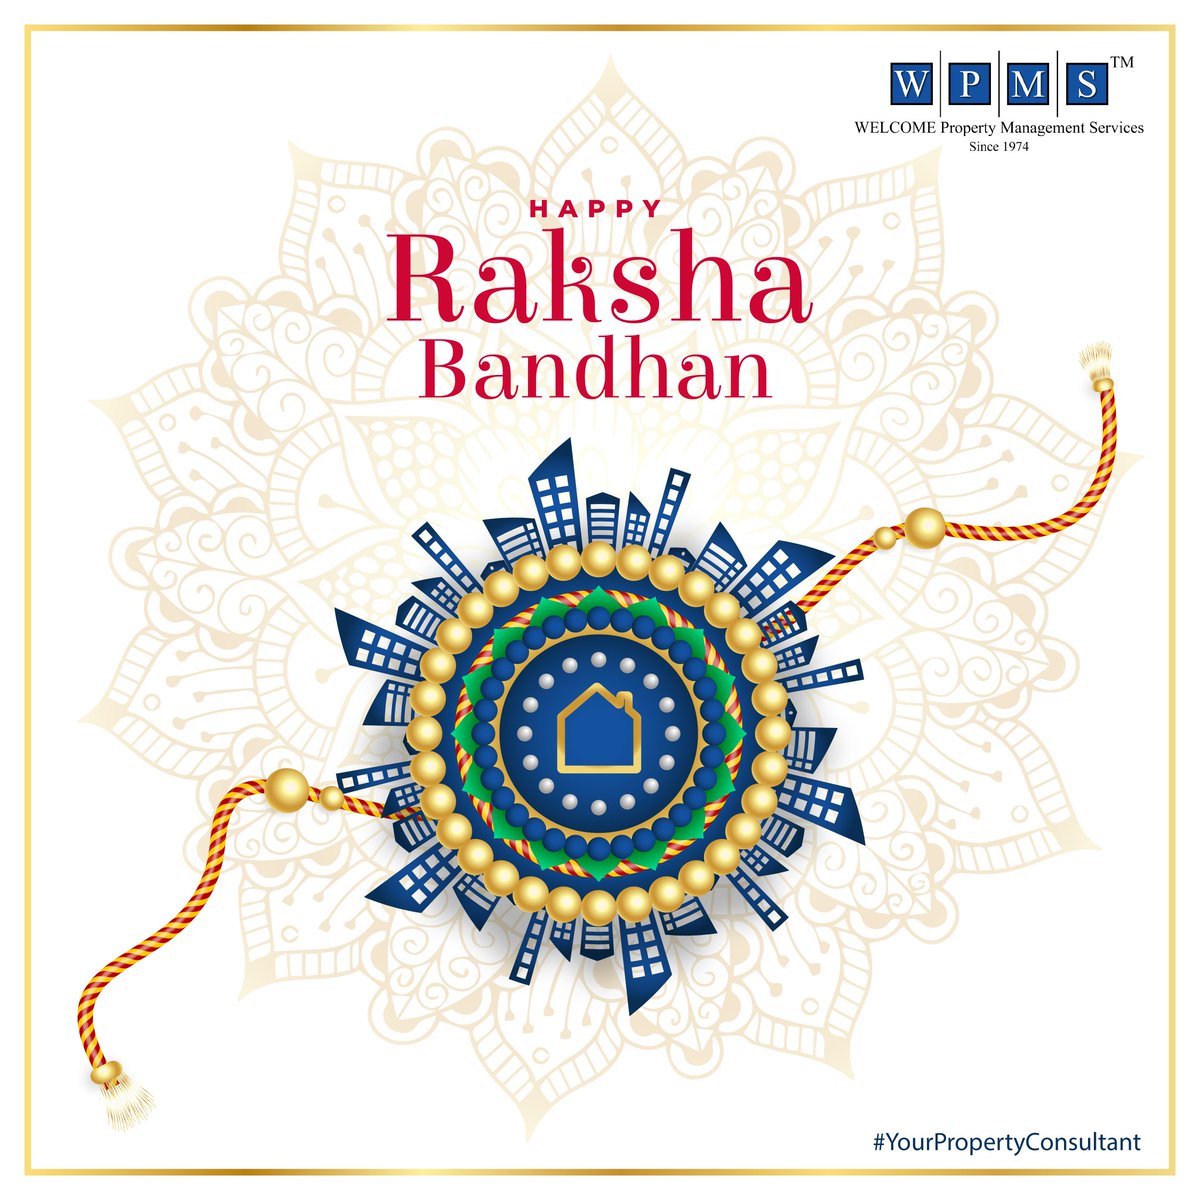 Celebrating The Sacred Bond Of Trust & Togetherness.

Happy Raksha Bandhan

#rakshabandhan #brothersisterlove #indianfestivals #mumbaifestivals #chembur #mumbai #propertyinvestment #realestatemumbai #realestateinvesting #proeprtyforsale #rakhi #rakhigifts #investinproperty